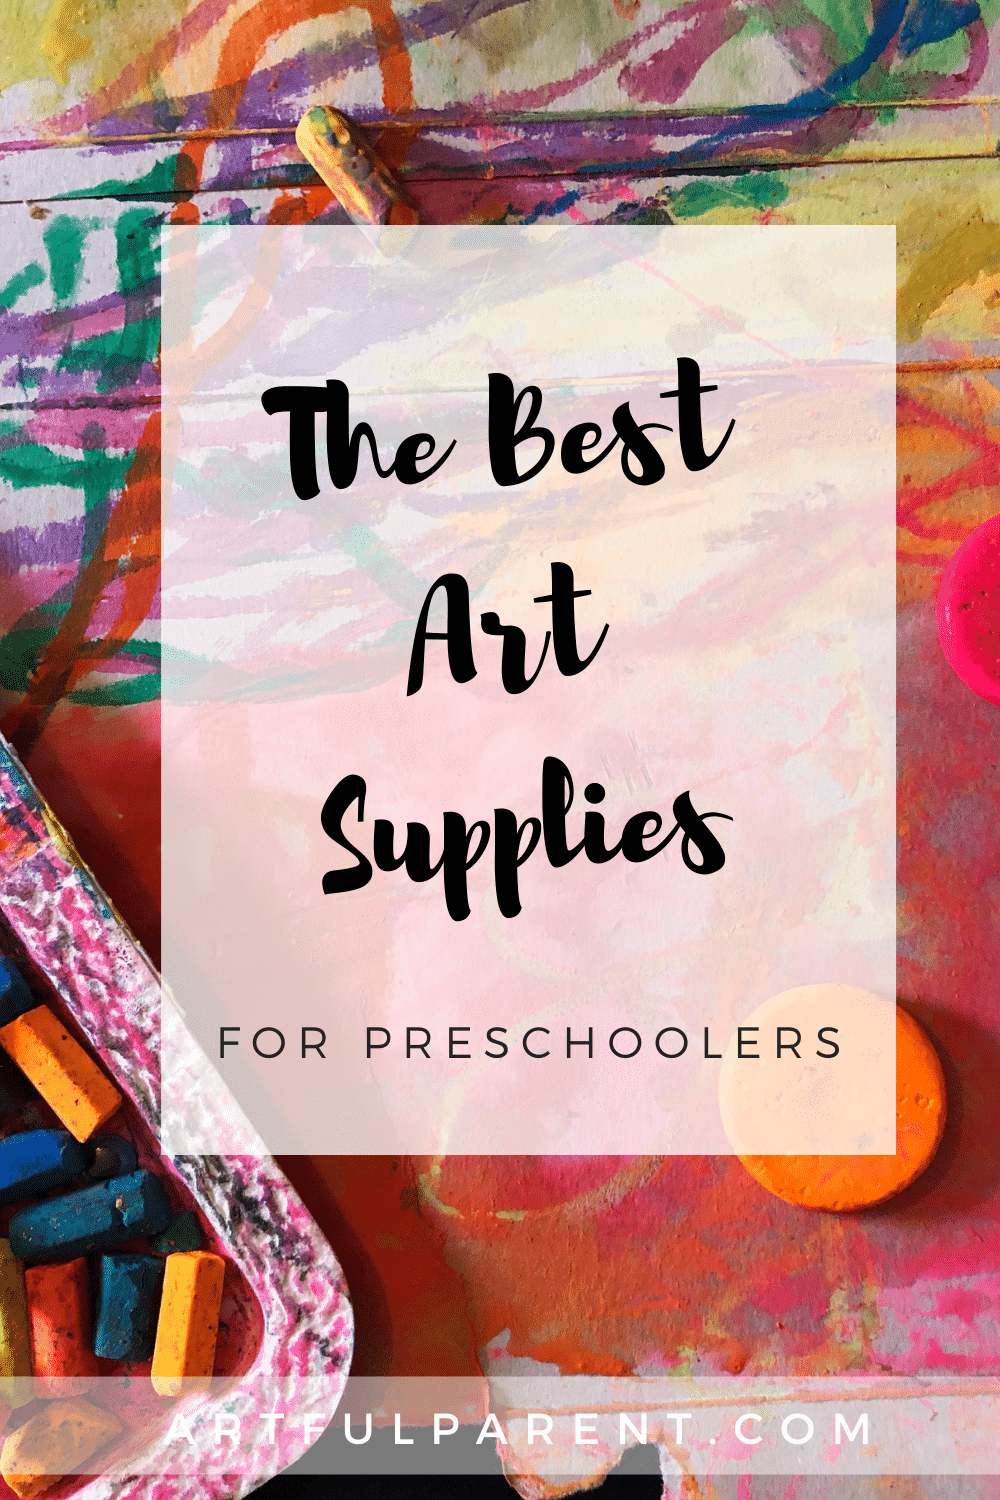 The BEST Art Supplies for Preschoolers